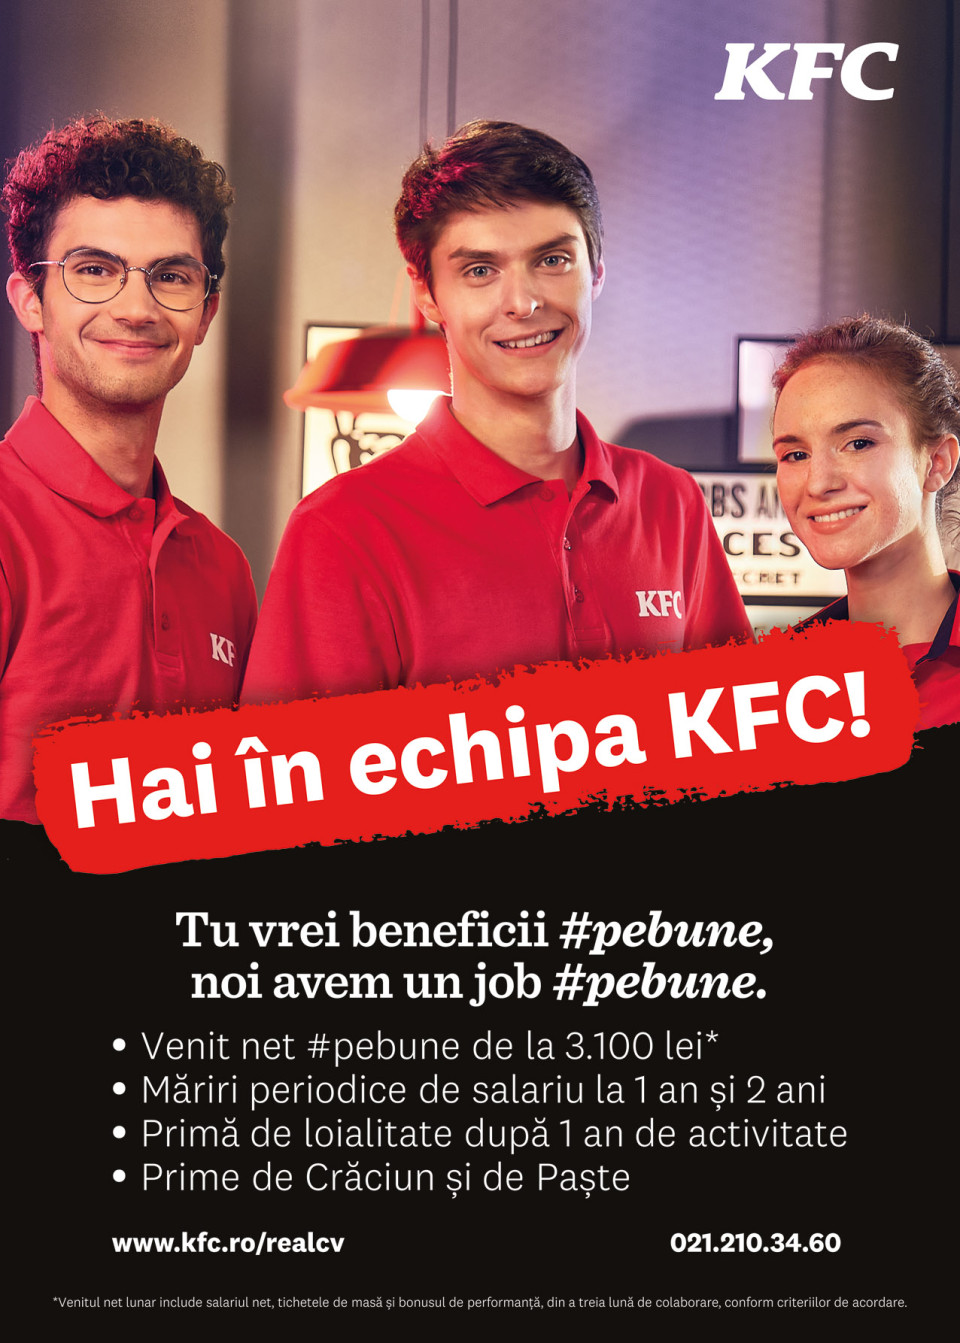 Restaurantele KFC cauta colegi #pebune!